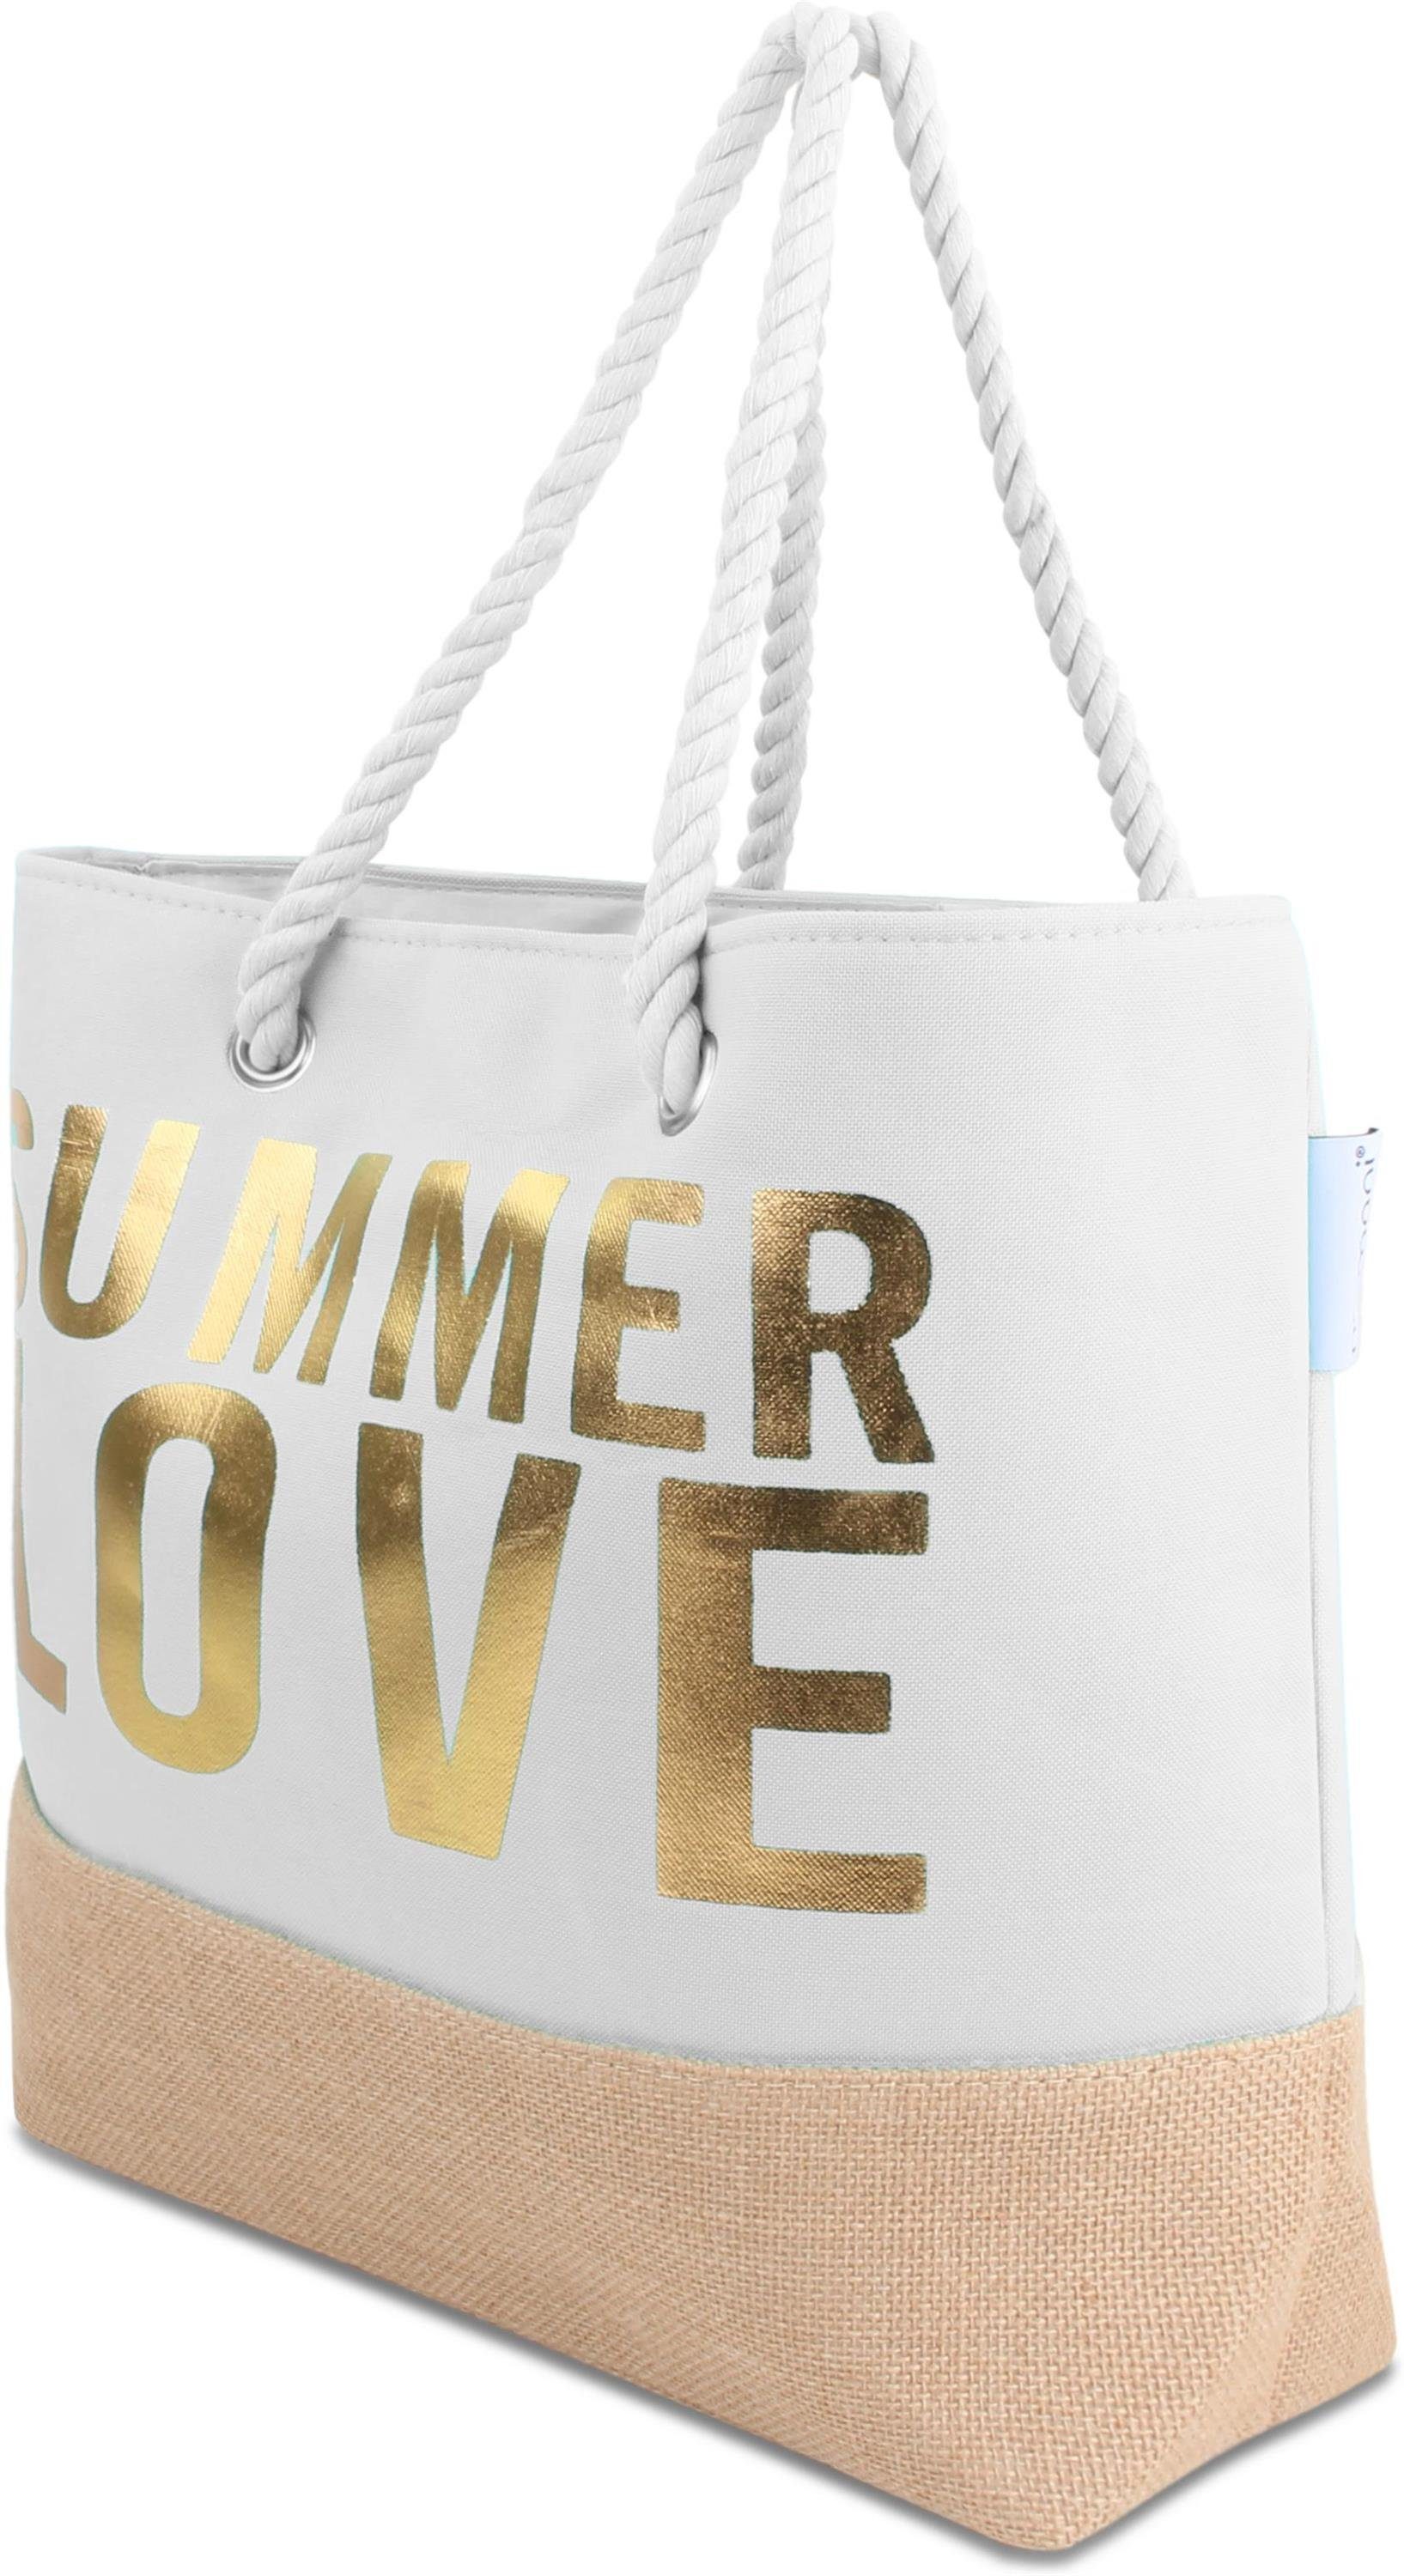 normani Strandtasche Bequeme Sommer-Umhängetasche, Summer Strandtasche, als Love White/Gold tragbar Henkeltasche Schultertasche